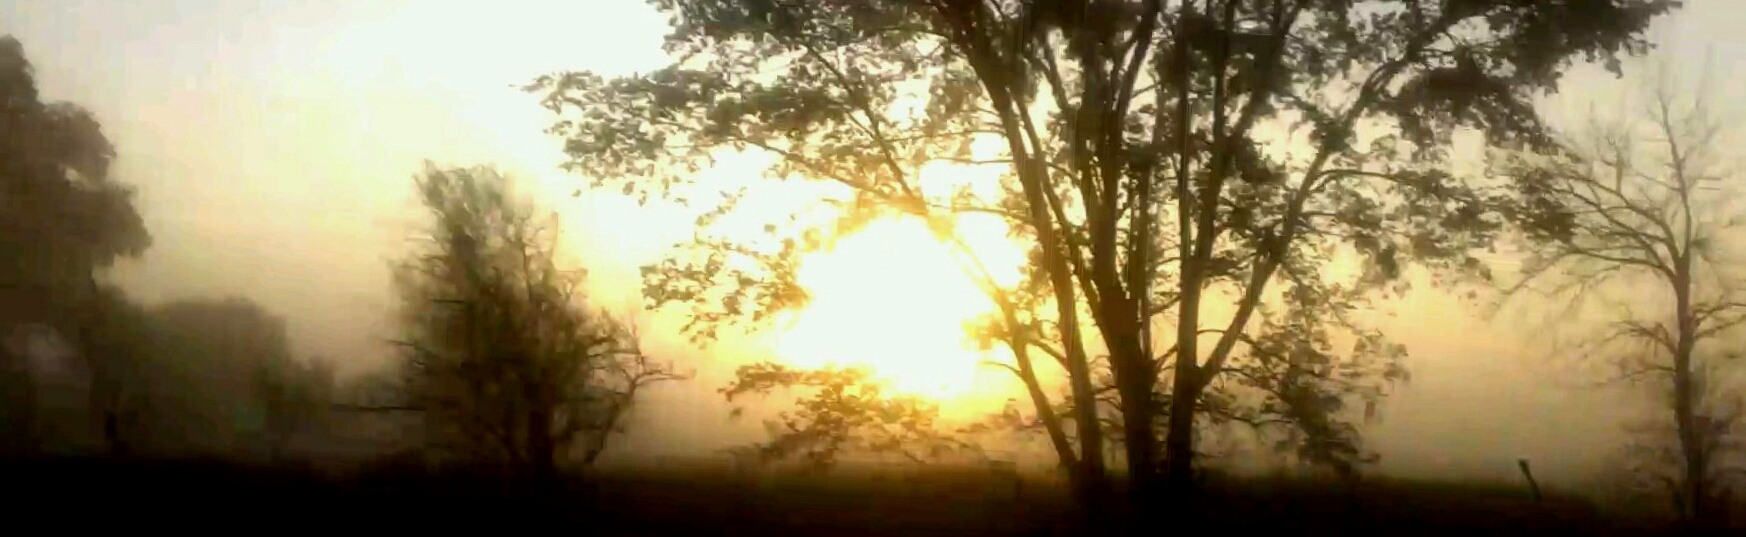 Foggy.Morning.jpg undefined by Glenn Krieger